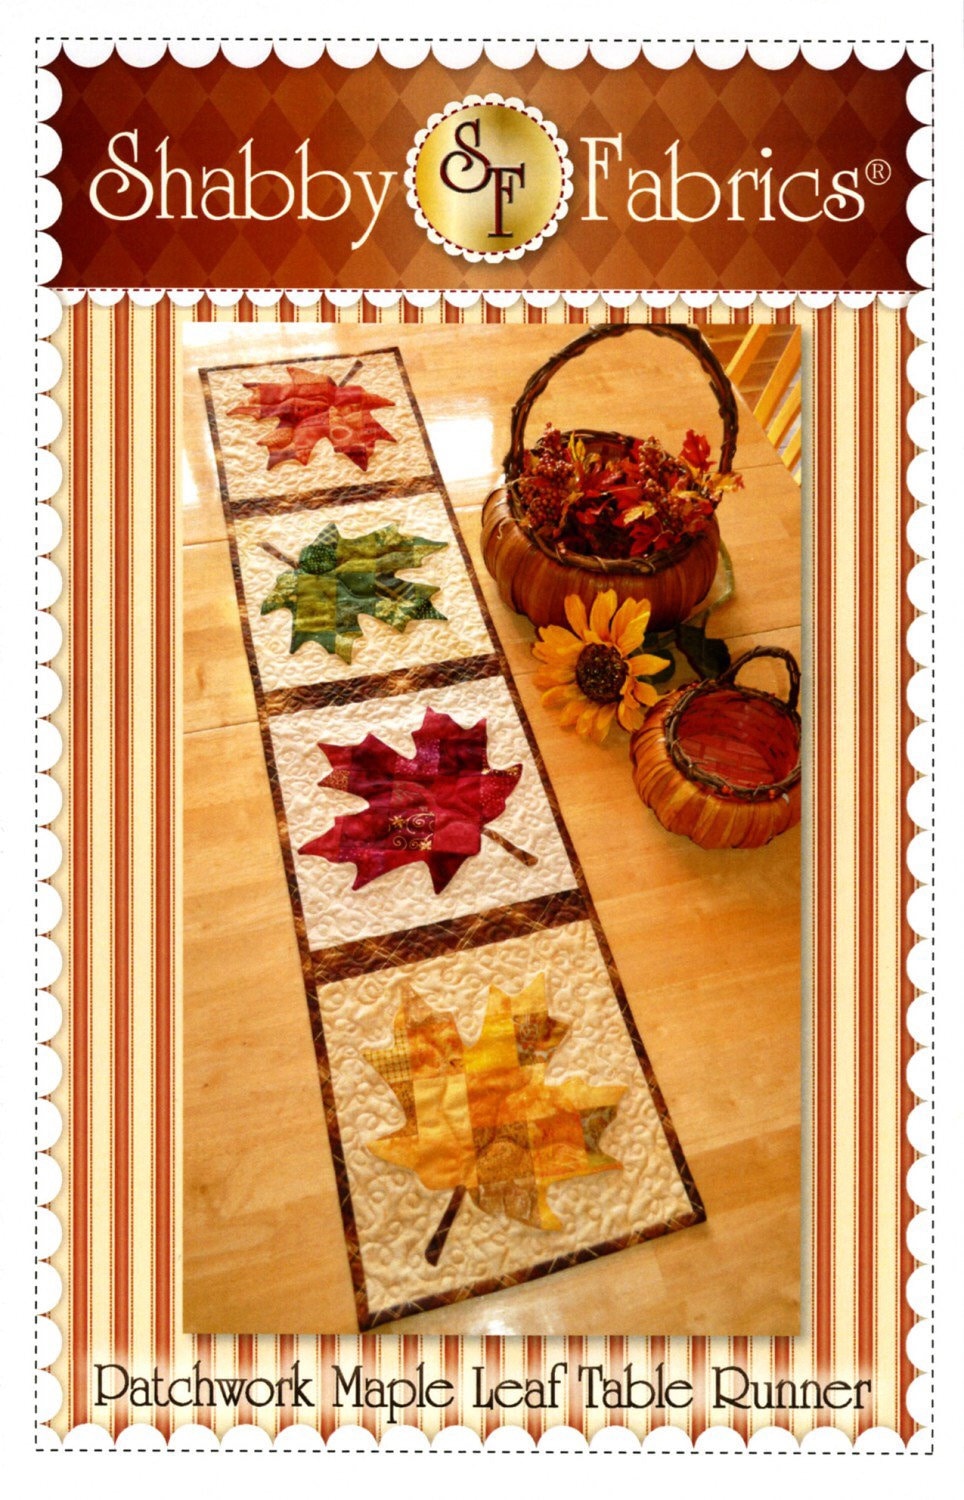 Patchwork Maple Leaf Table Runner Pattern - Shabby Fabrics - Jennifer Bosworth - Maple Leaf Table Runner Pattern